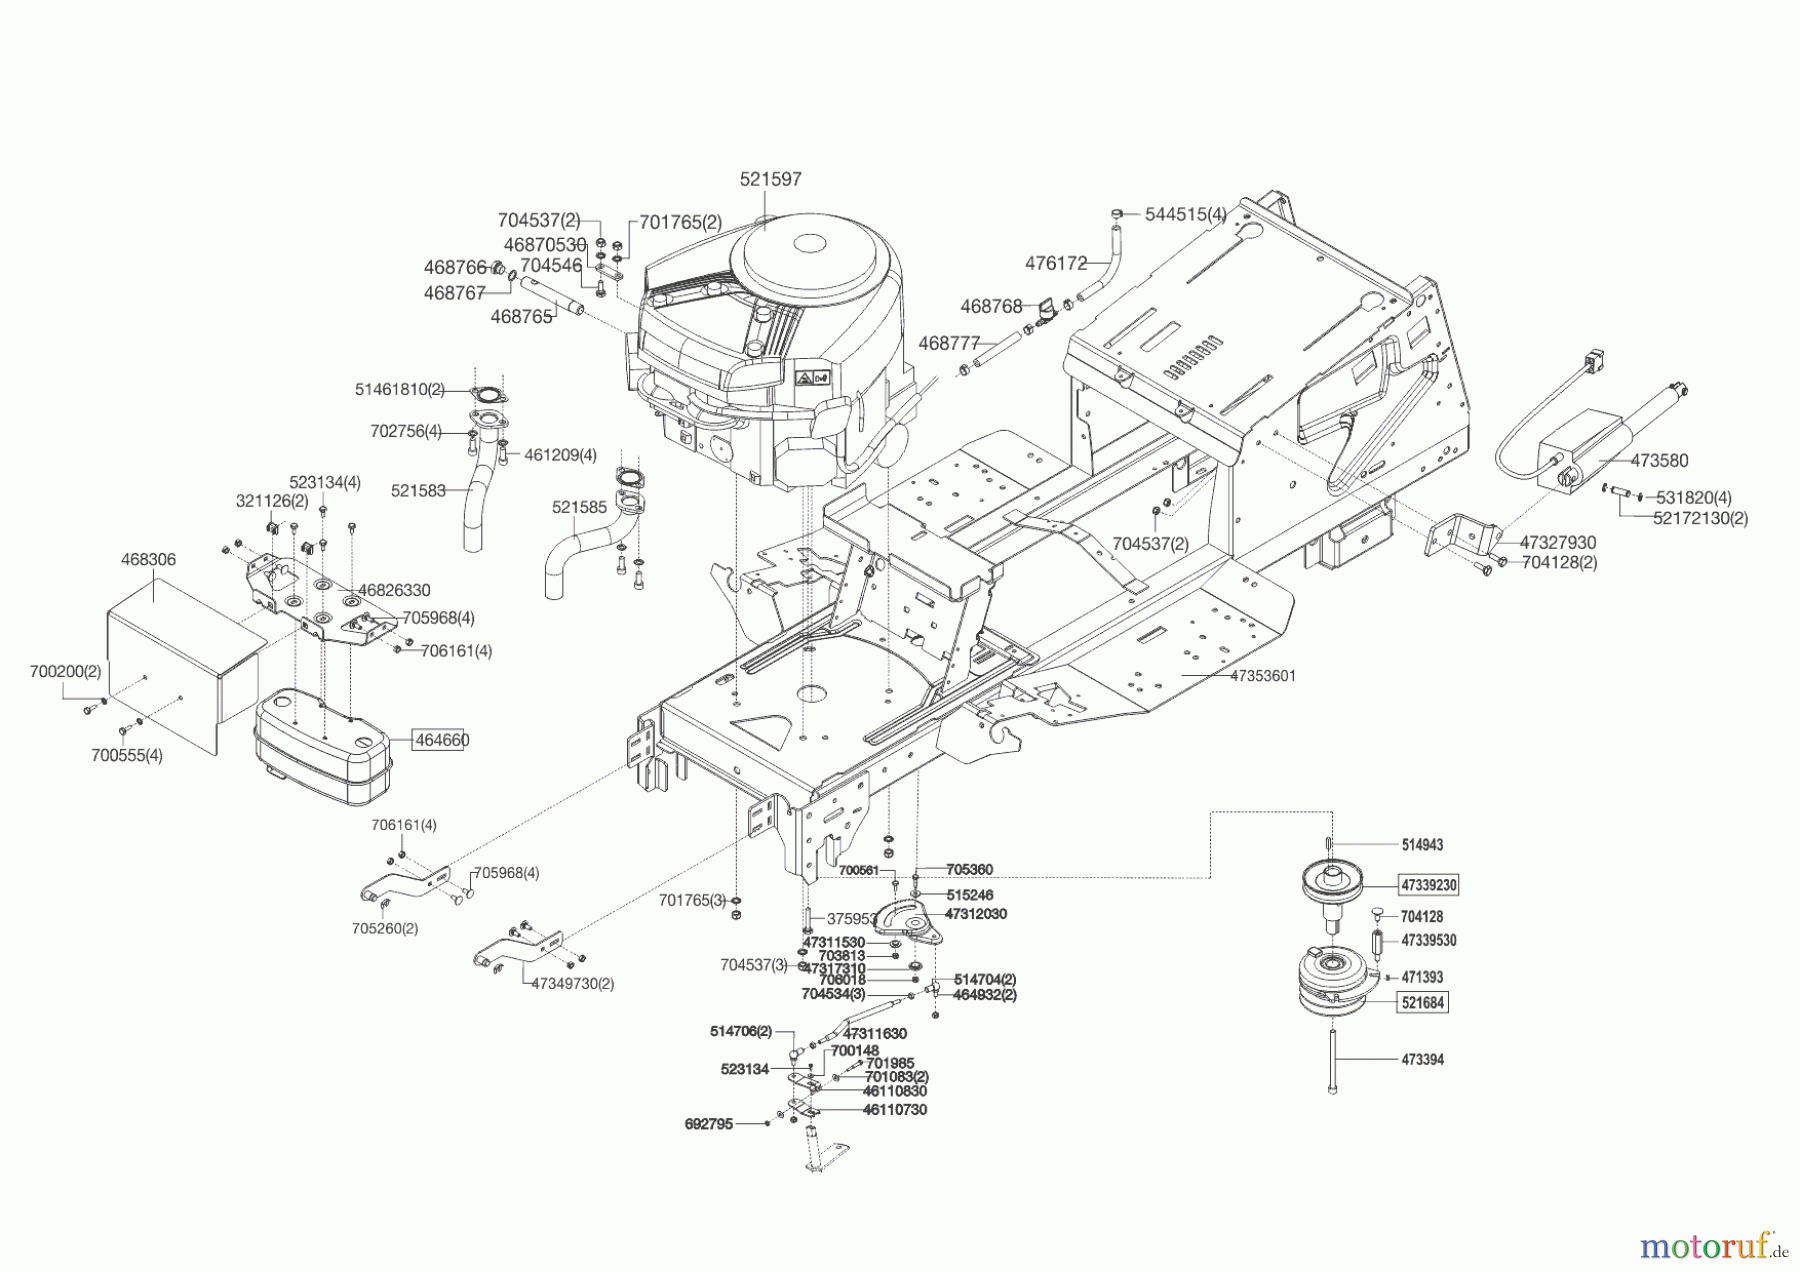  Powerline Gartentechnik Rasentraktor T20-105.4 HDE V2  ab 09/2014 Seite 2